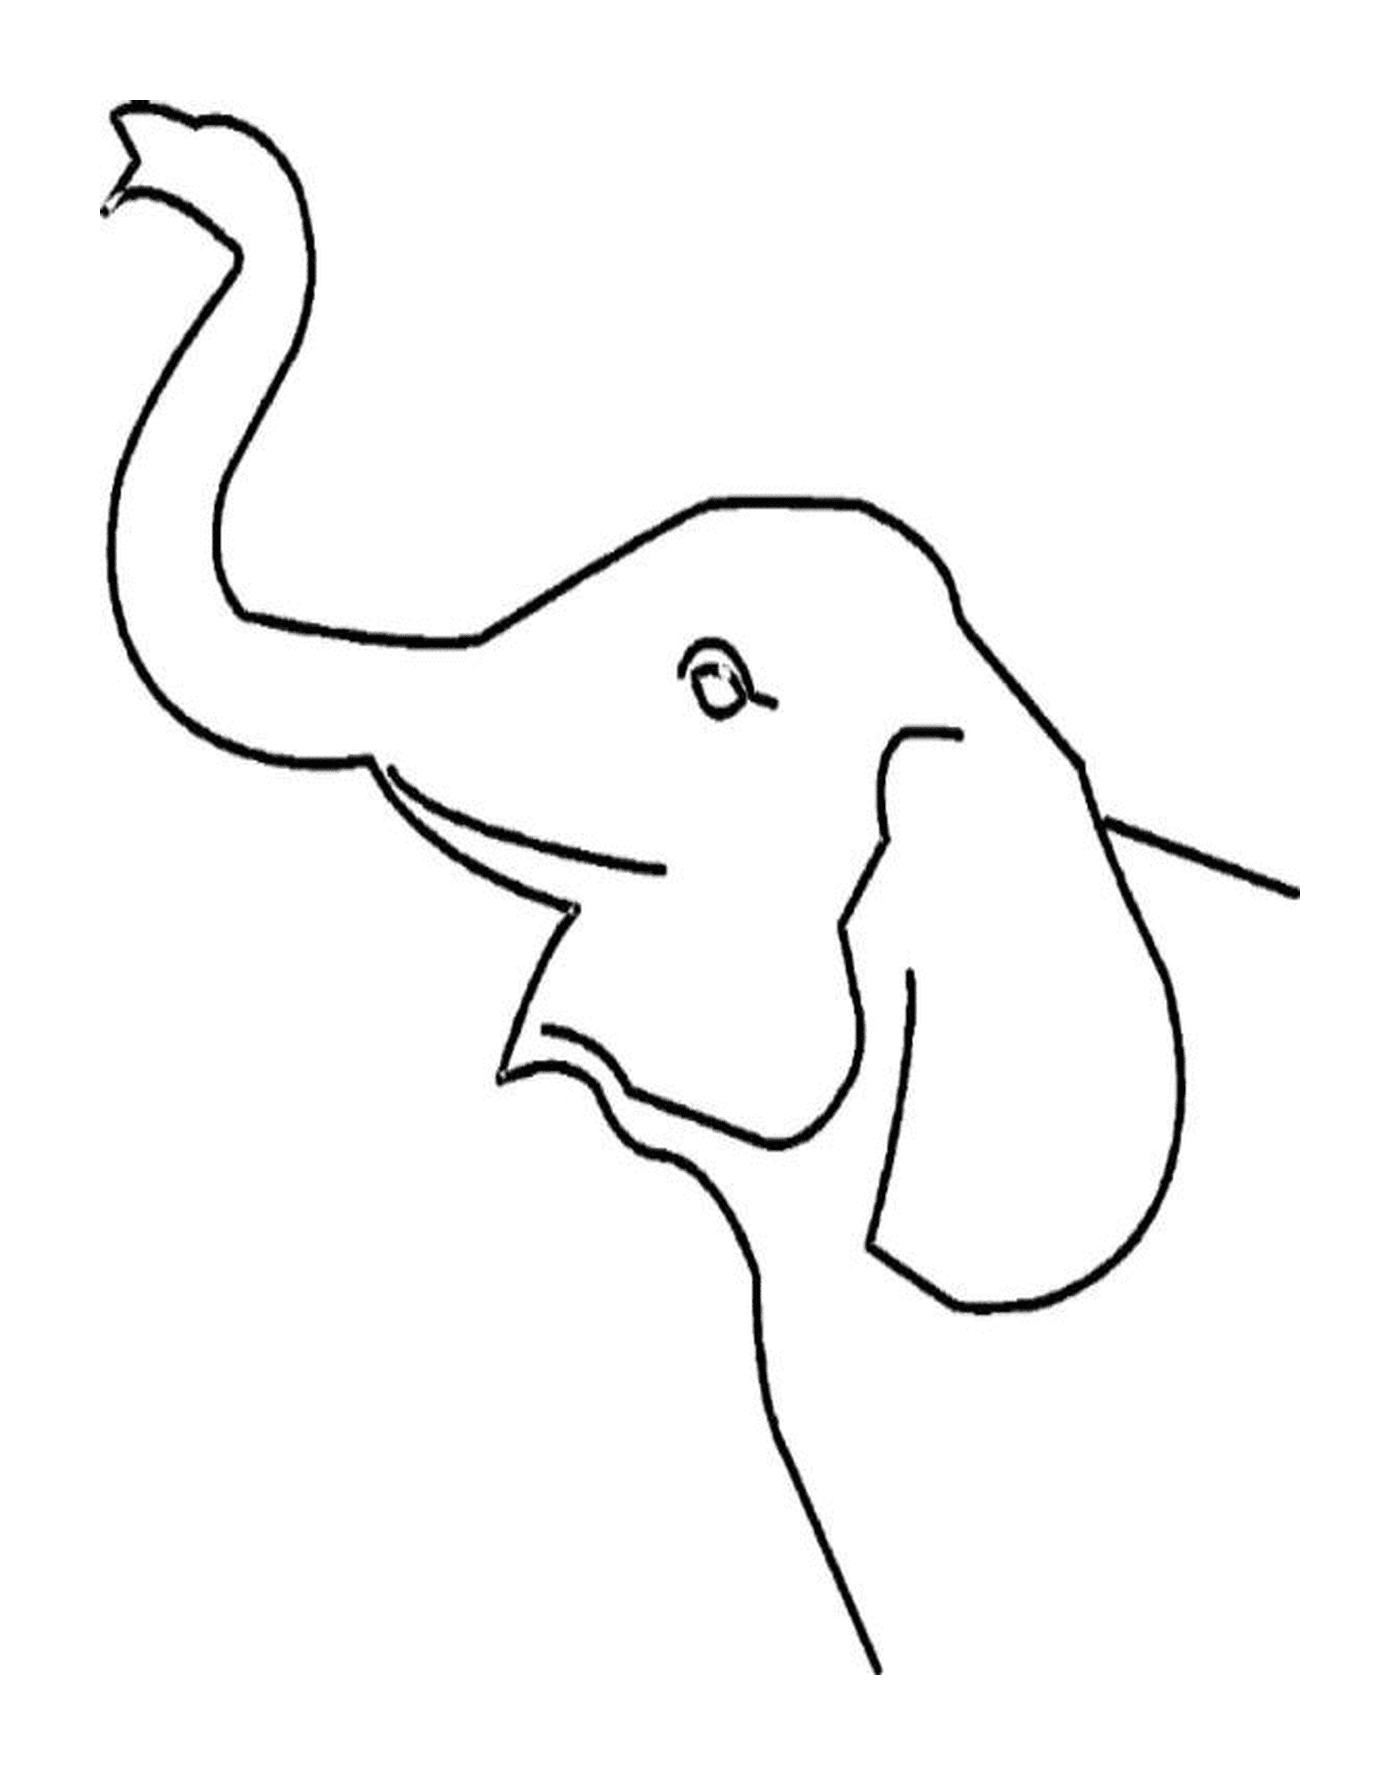   Une trompe d'éléphant se profile 